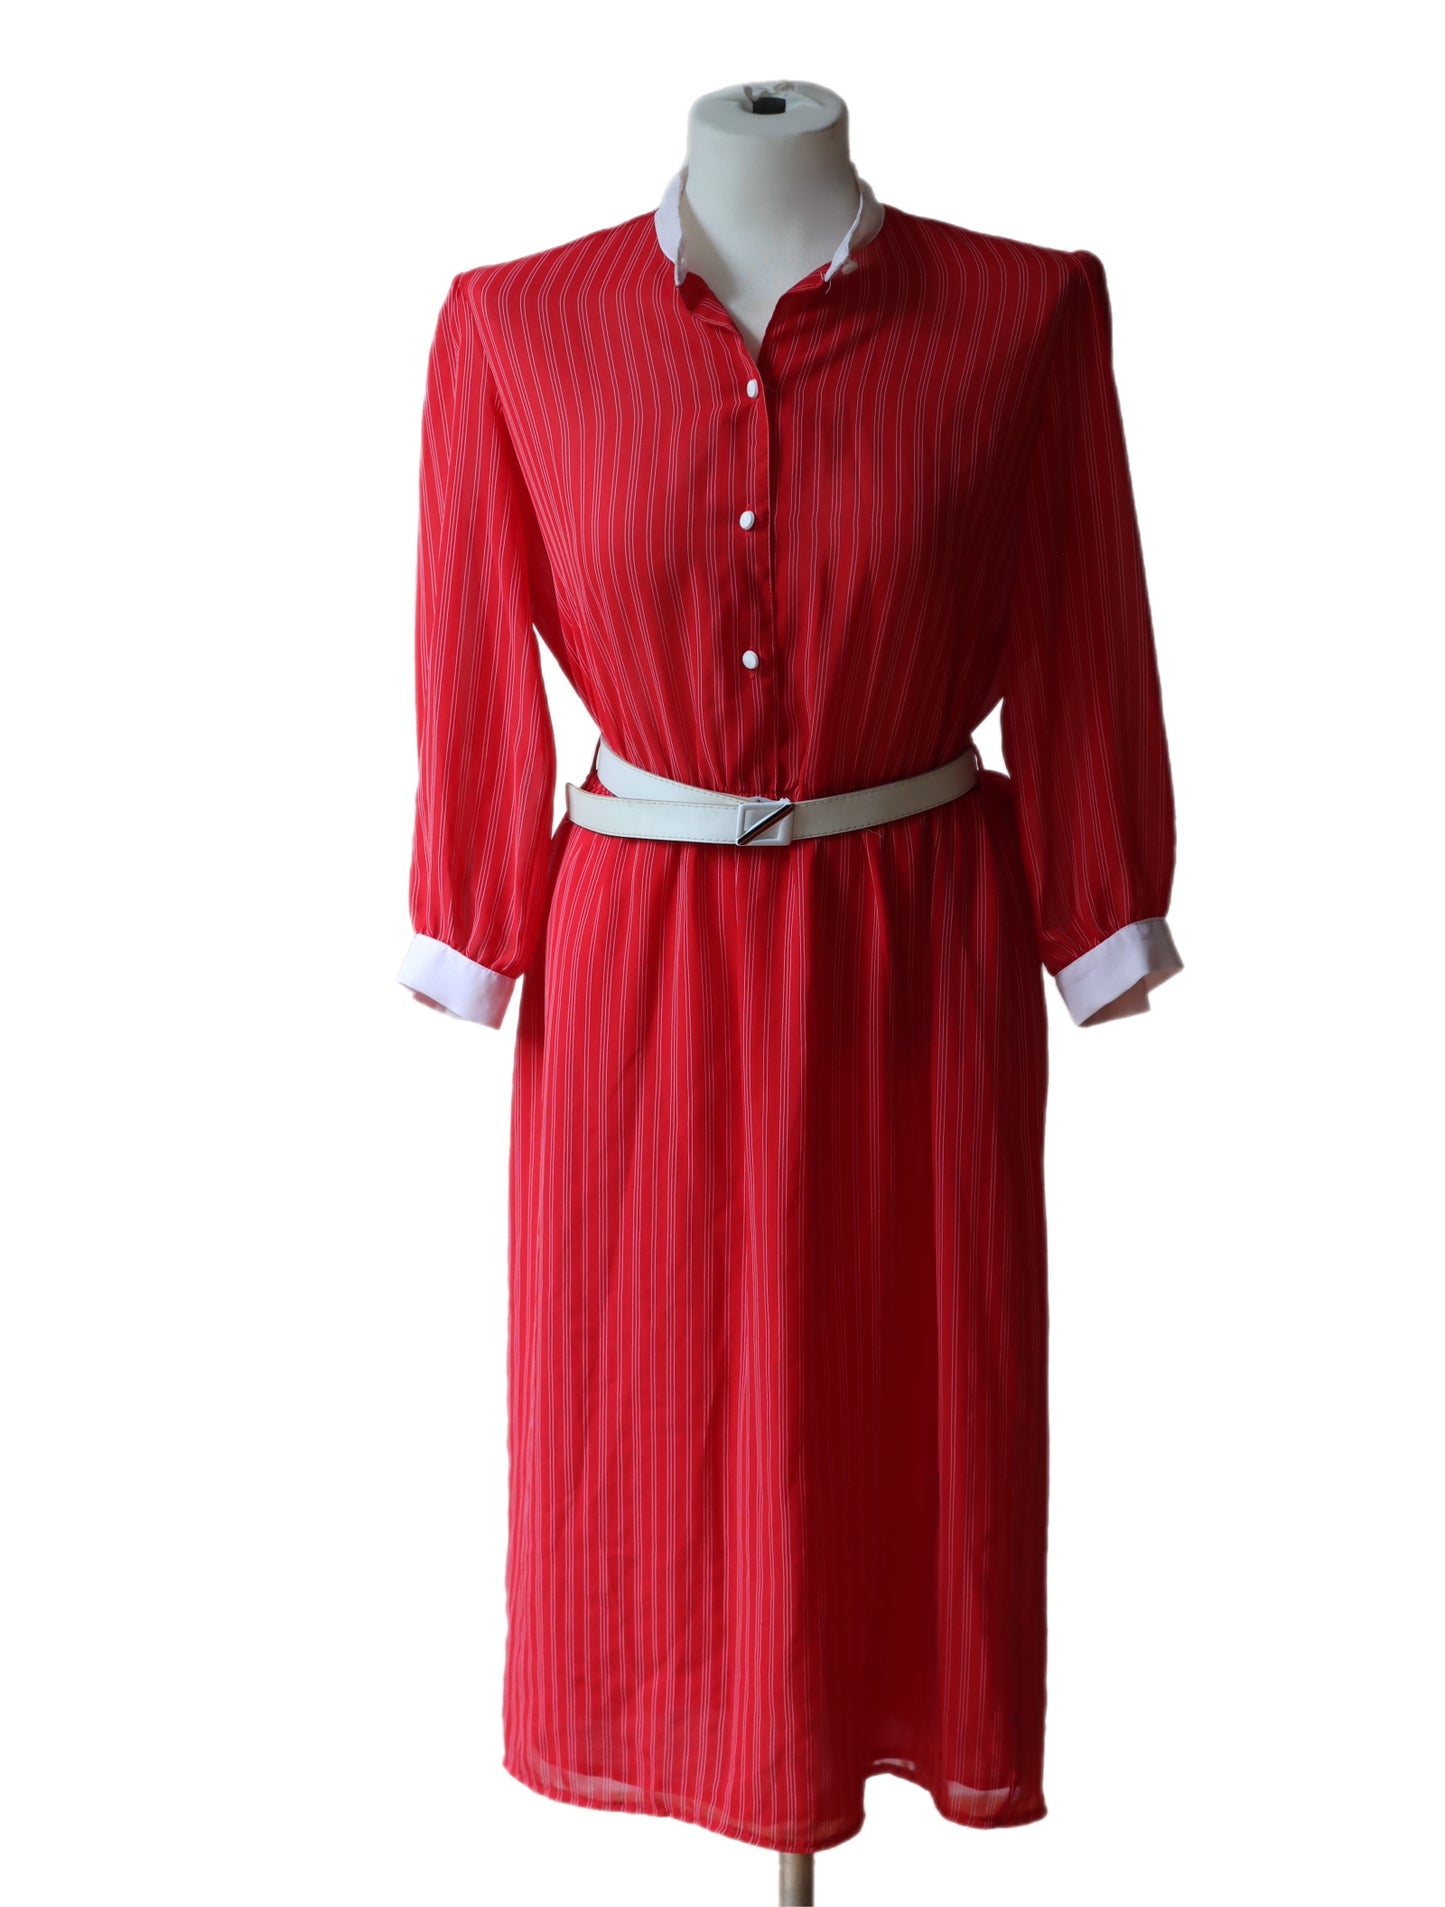 Rød kjole med hvite striper, vintage